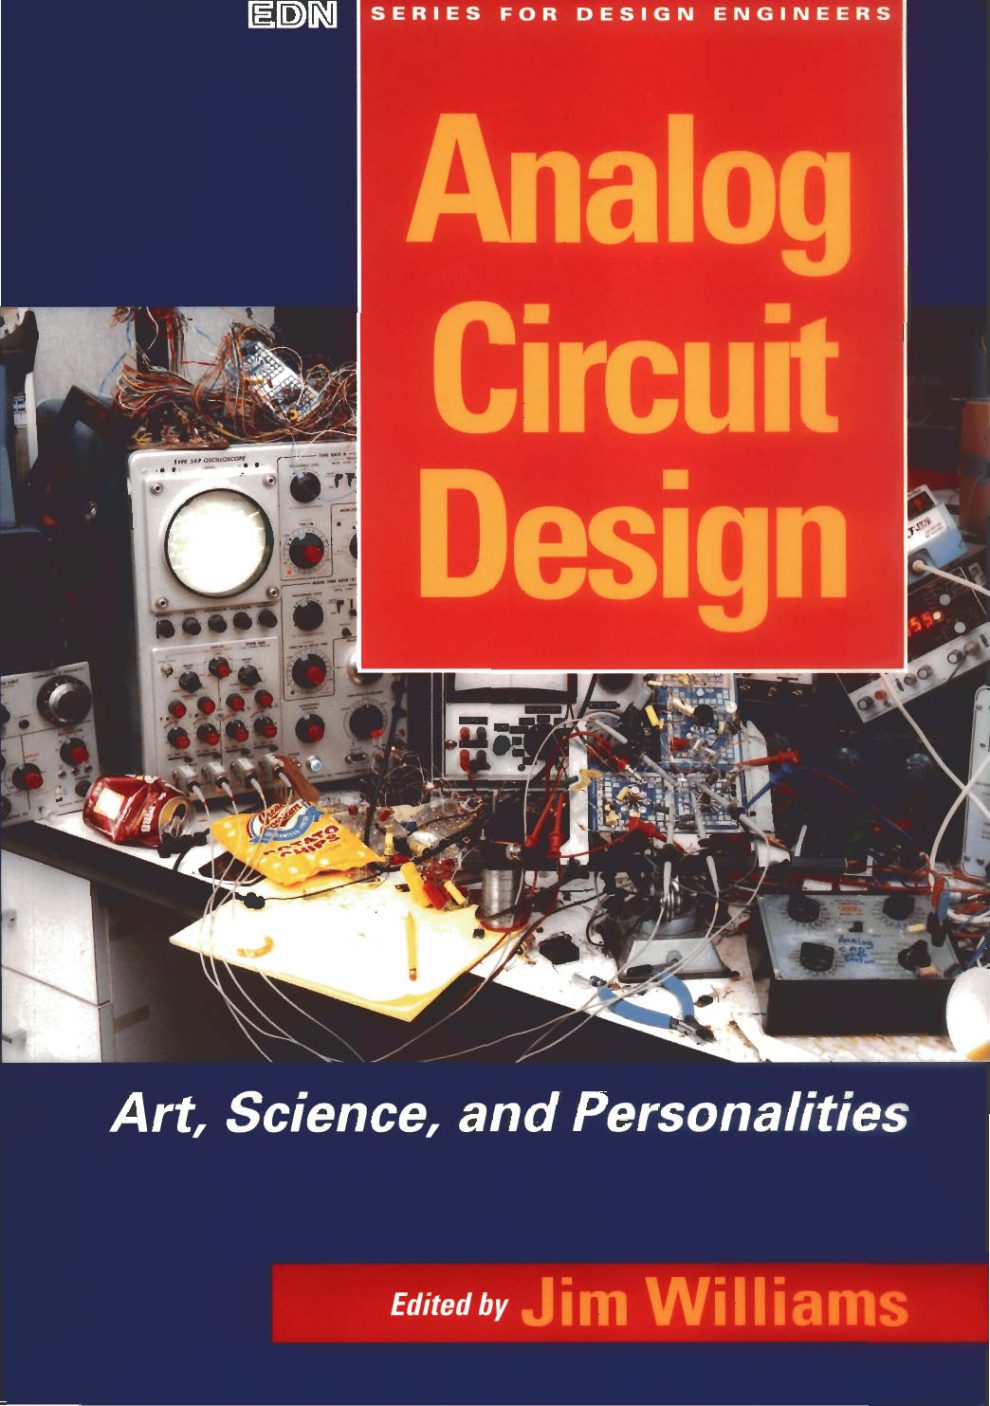 Analog Circuit Design PDF Download - Service manual - Repair manual PDF